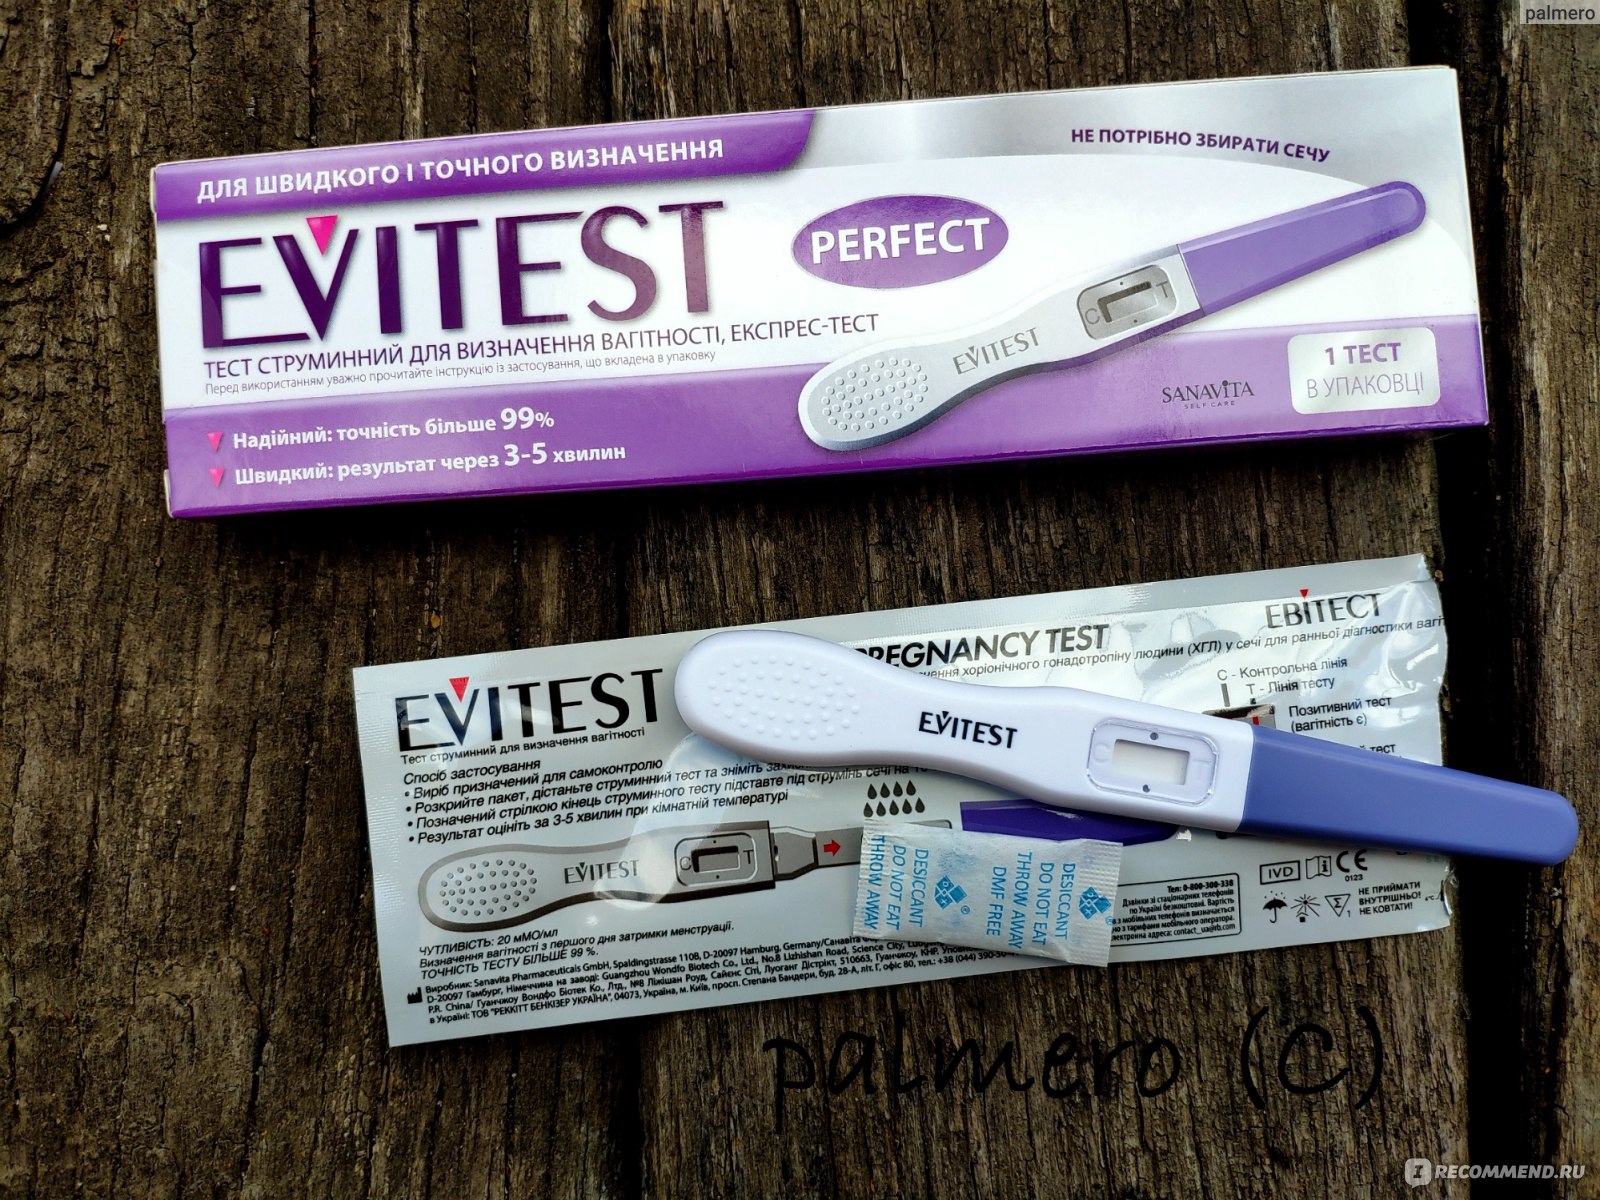 Струйный тест на беременность отзывы. Струйный тест на беременность Evitest струйный. Тест на беременность Evitest perfect струйный. Электронный тест струйный эвитест. Струйный тест (тест-мидстрим).